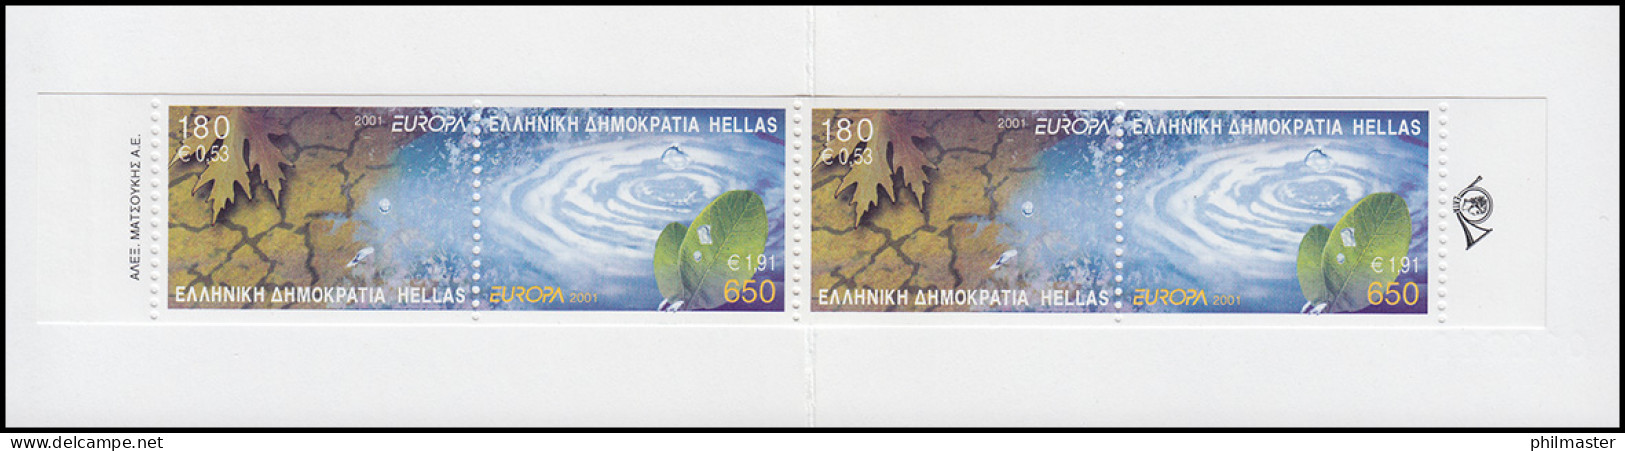 Griechenland Markenheftchen 23 Europa 2001, ** Postfrisch - Libretti